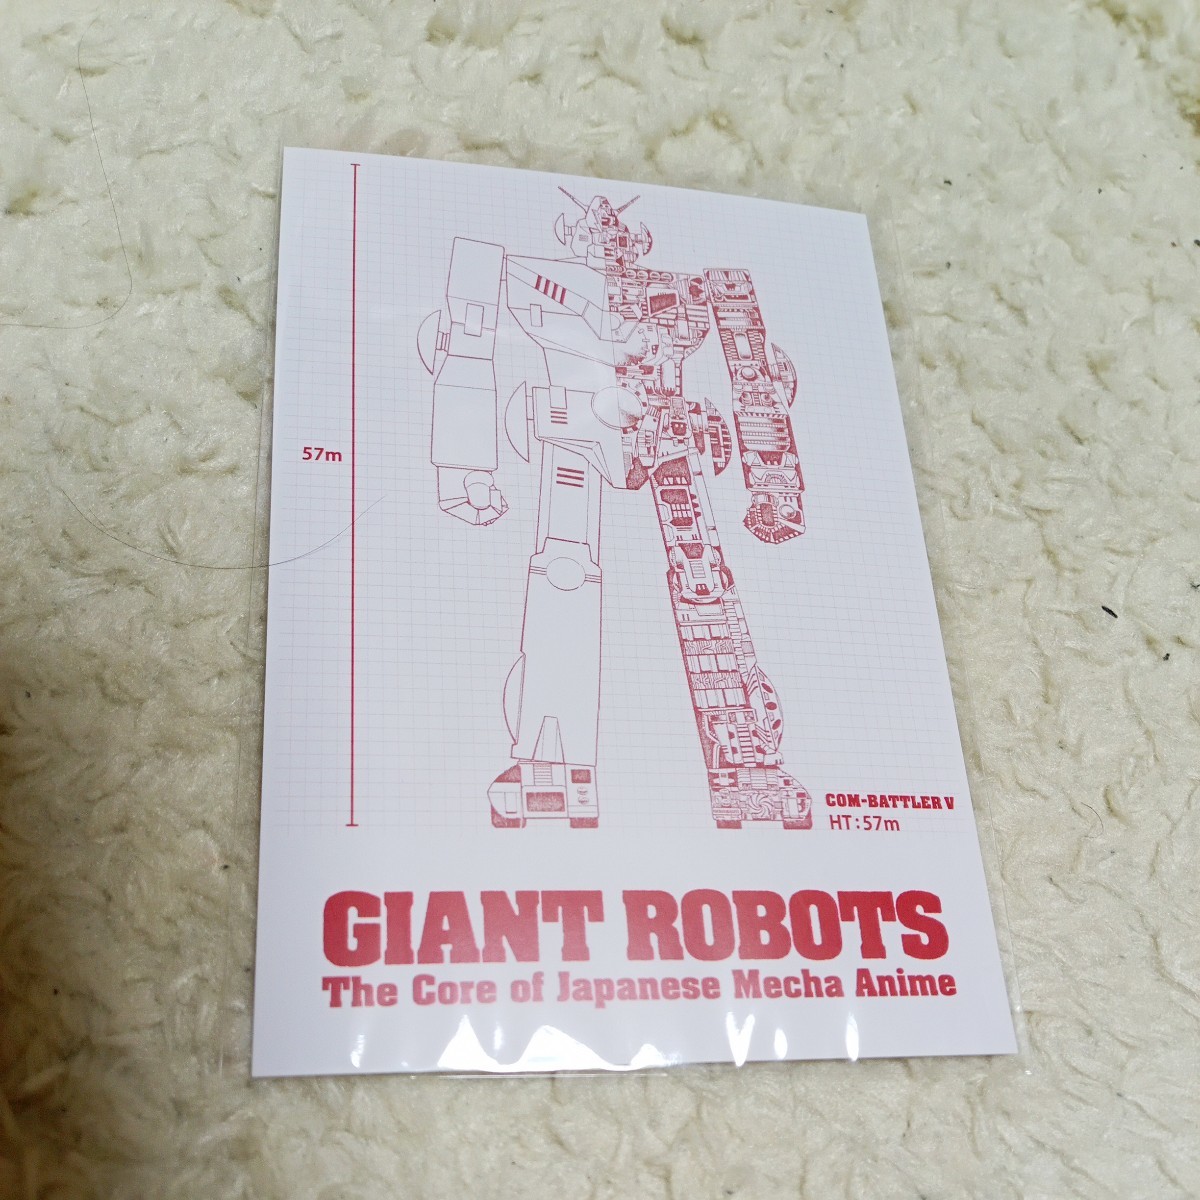 横須賀美術館 日本の巨大ロボット群像 ポストカード 超電磁ロボ コン・バトラーV 透視図 新品未開封_画像1